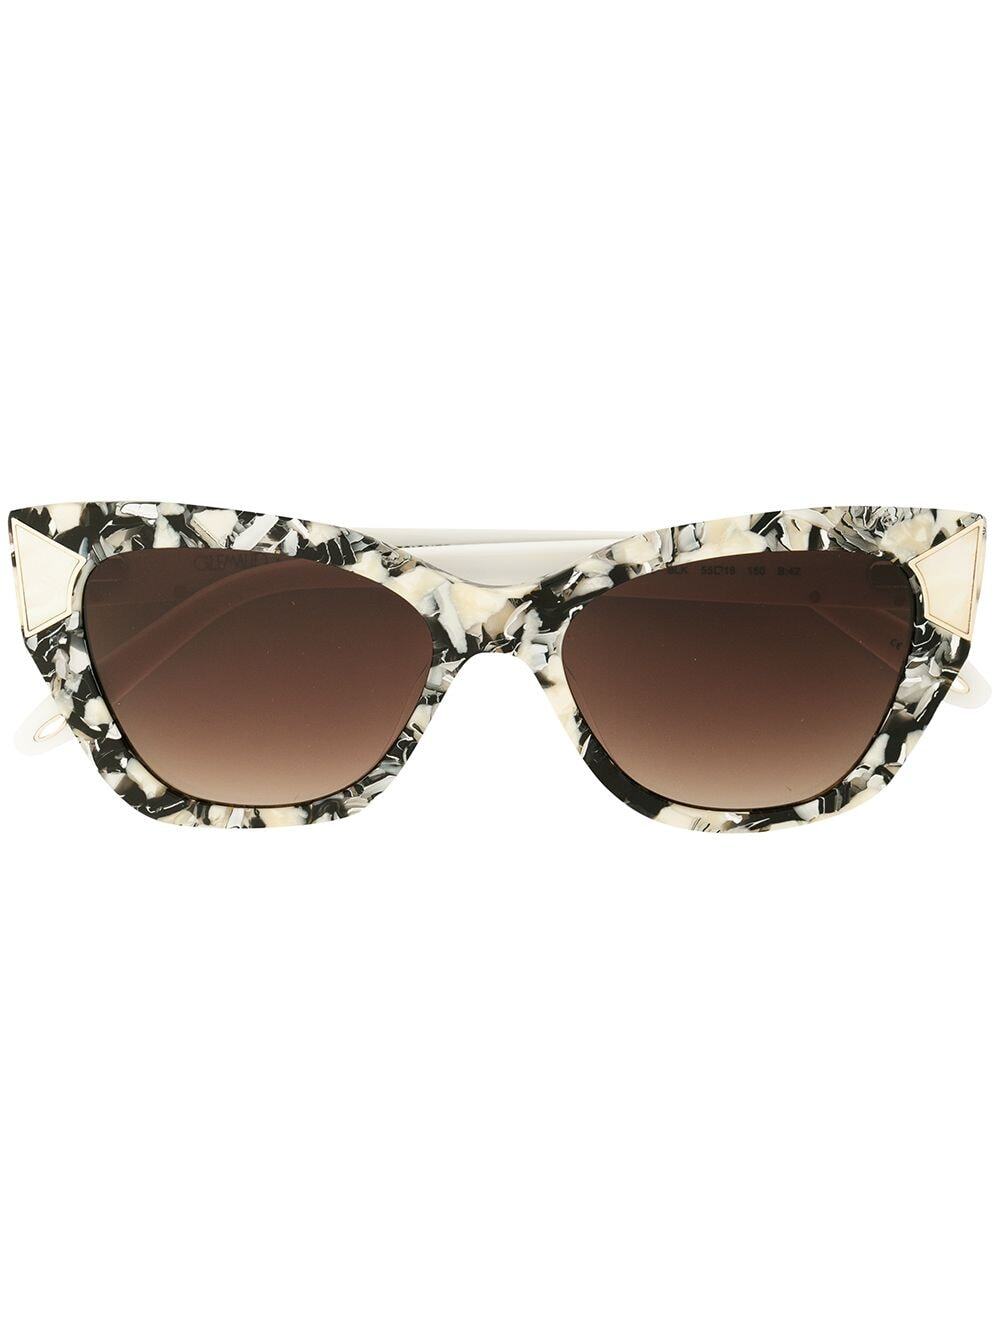 Victor Glemaud tortoiseshell-effect cat-eye sunglasses - Black